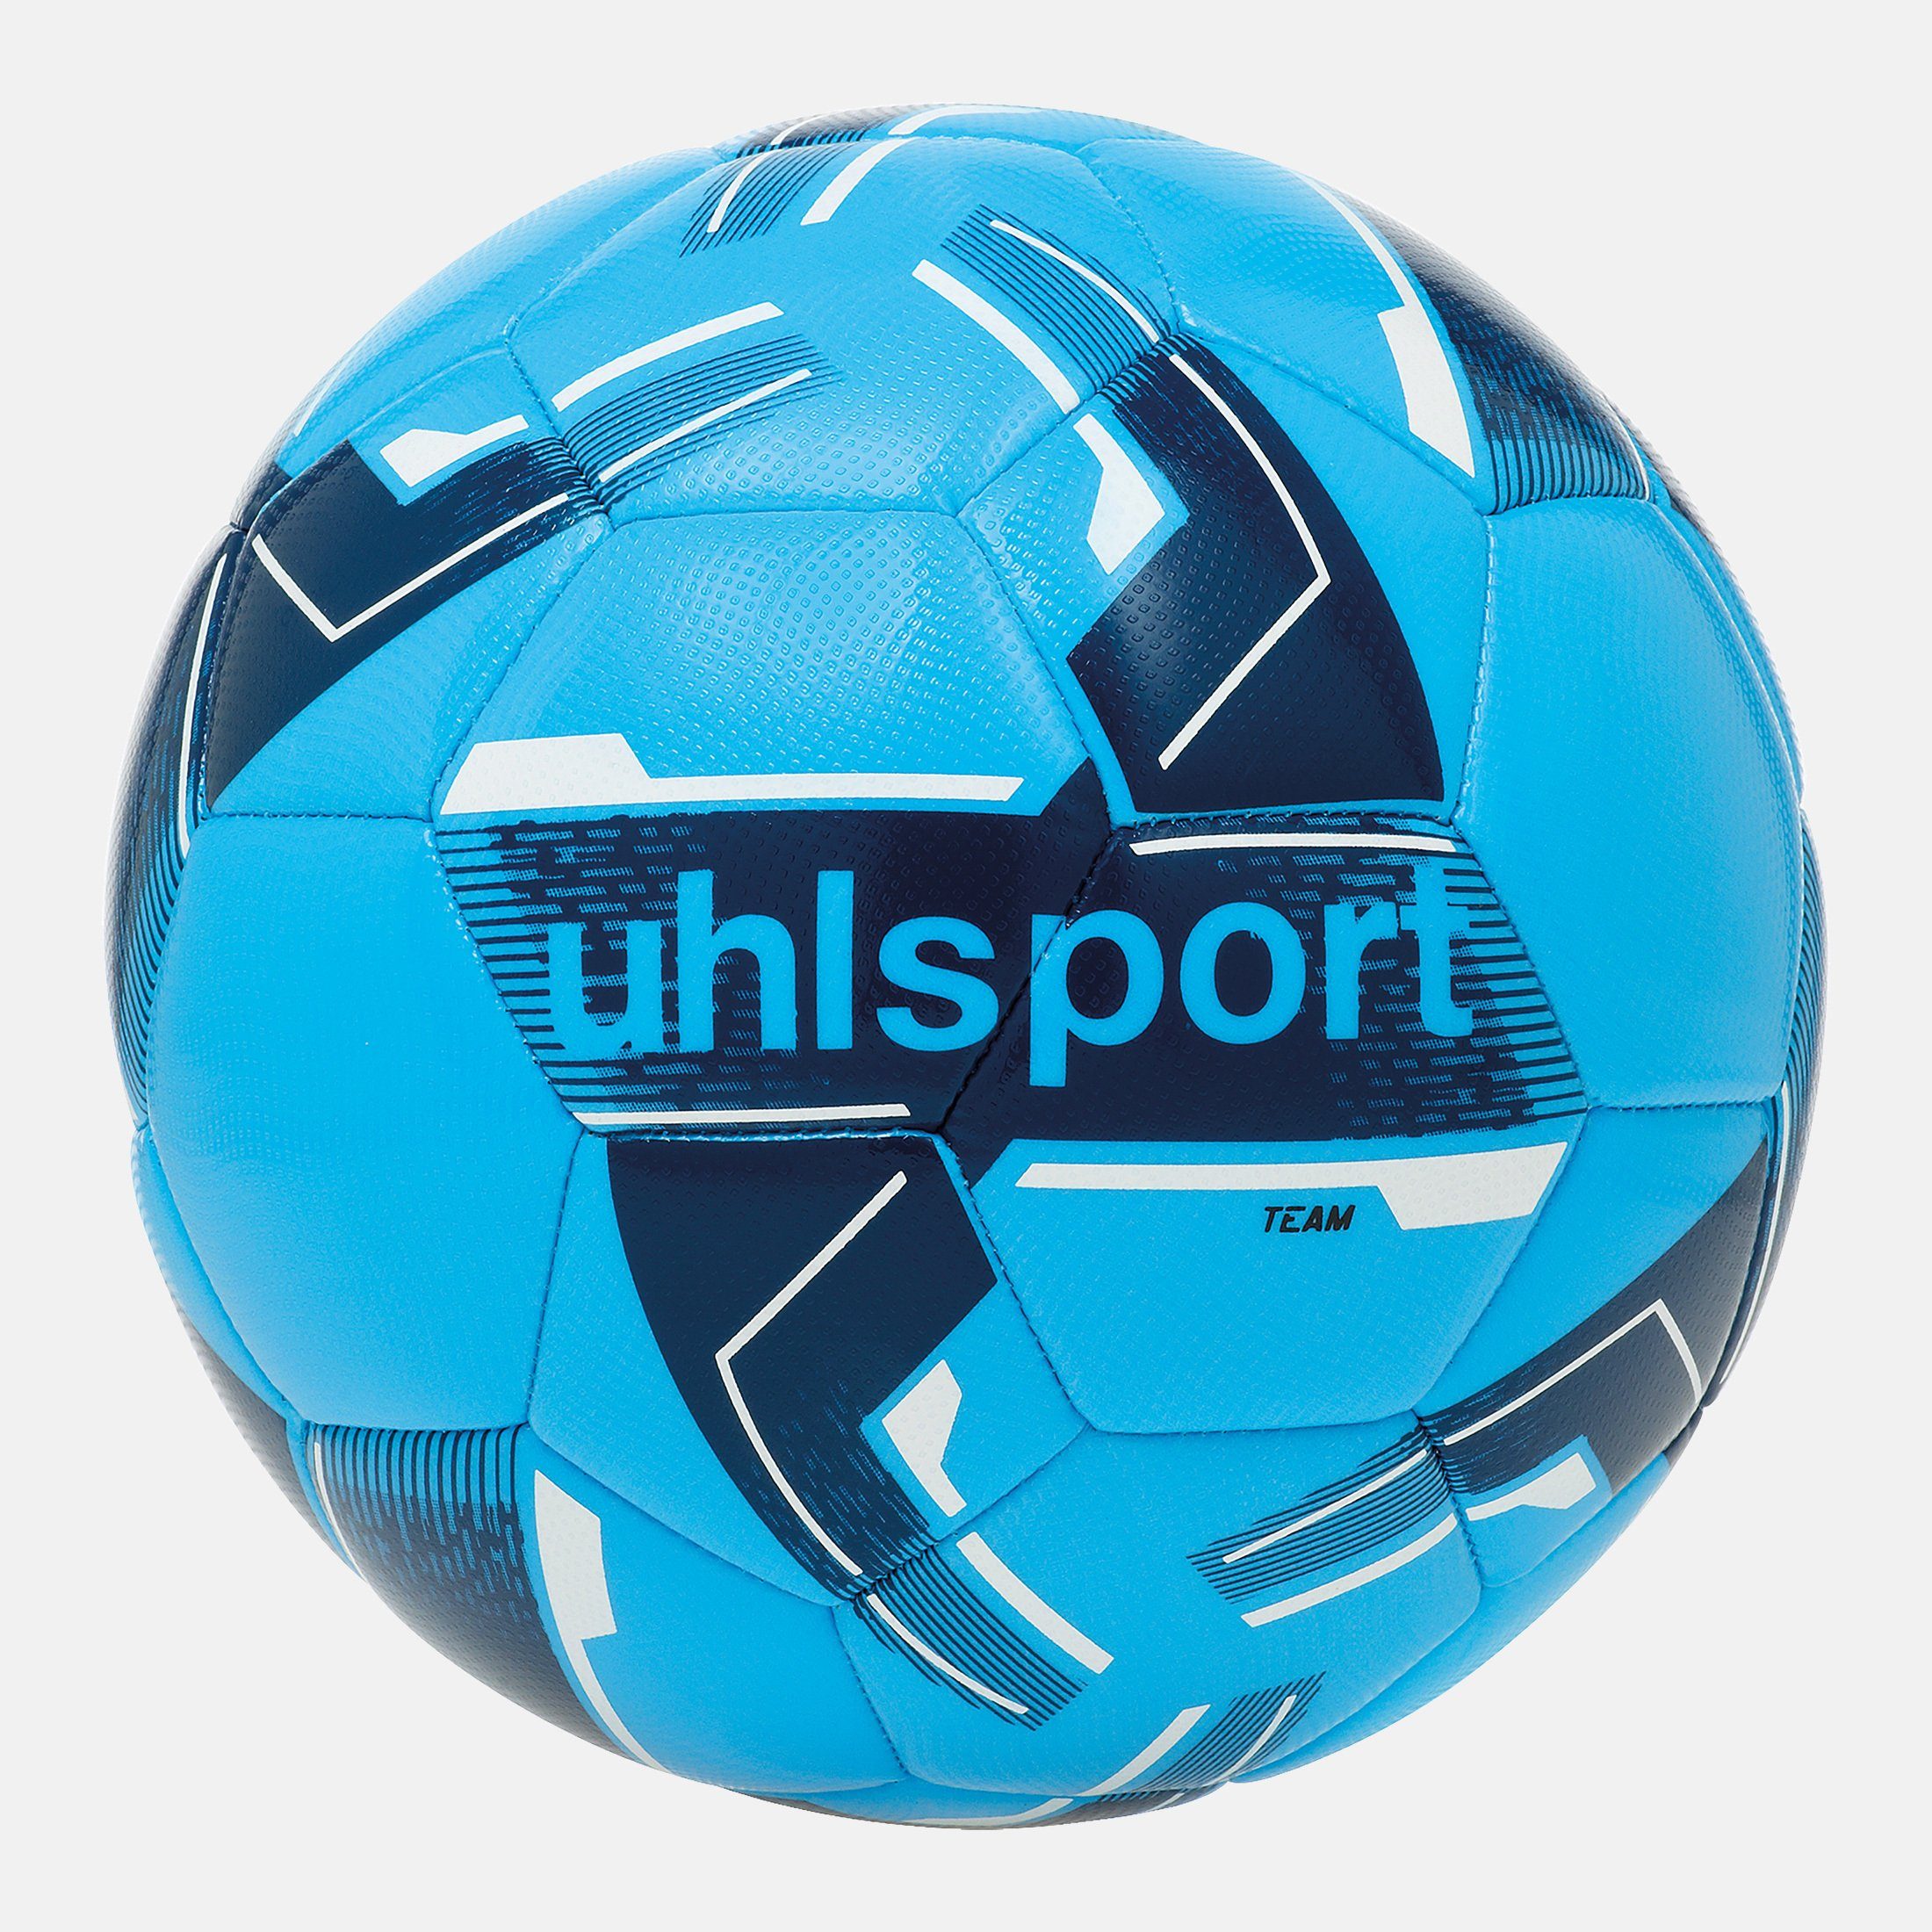 uhlsport Fußball TEAM eisblau/marine/weiß uhlsport Fußball